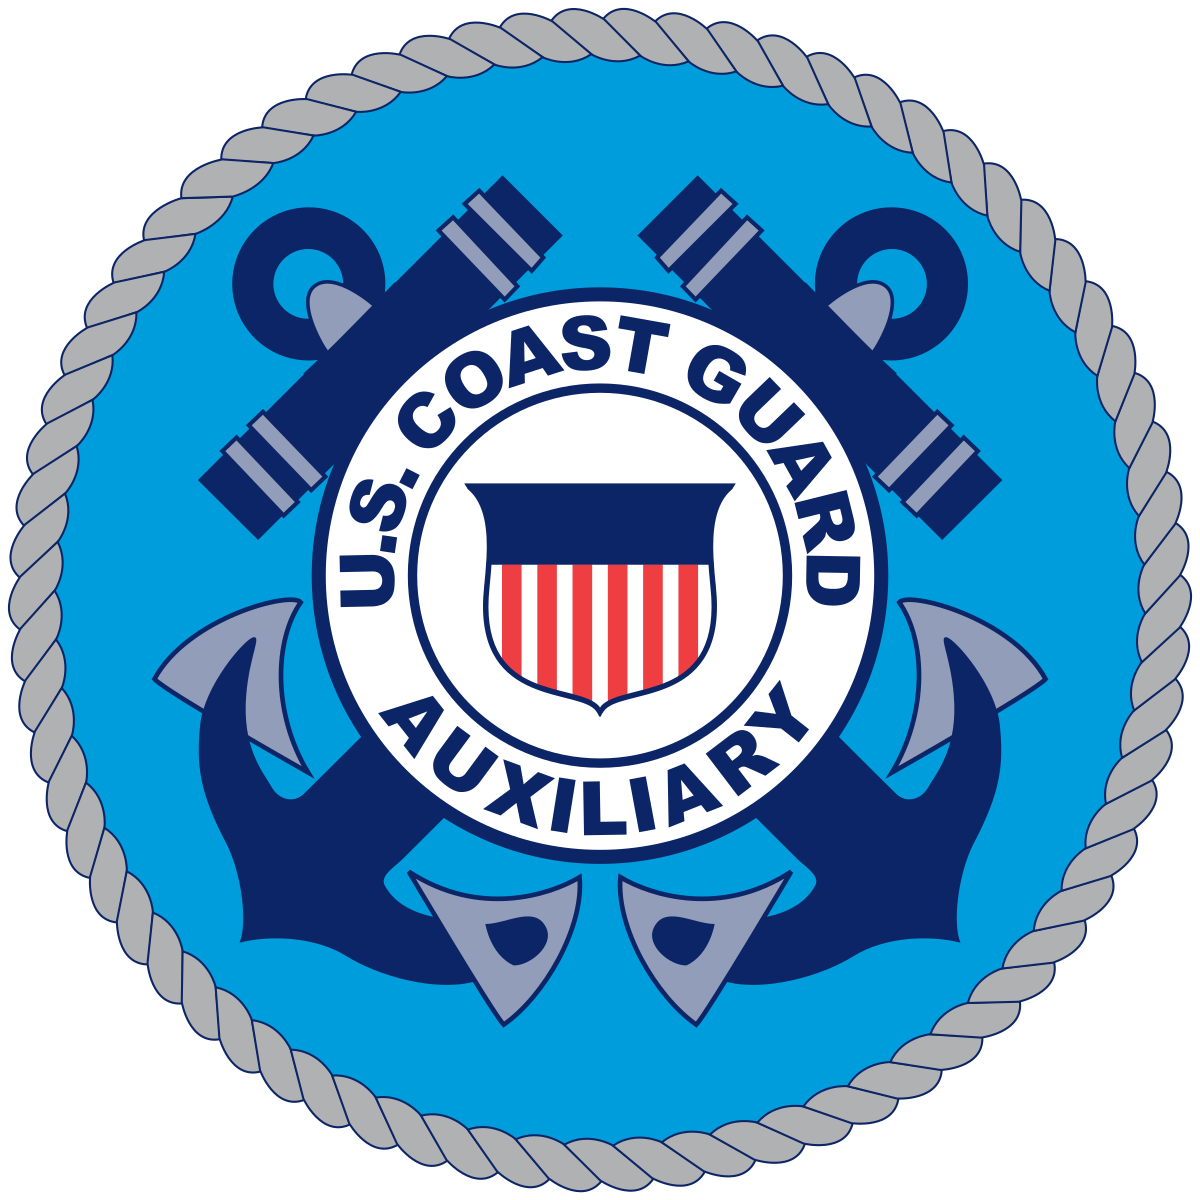 United States Coast Guard Auxiliary University Programs